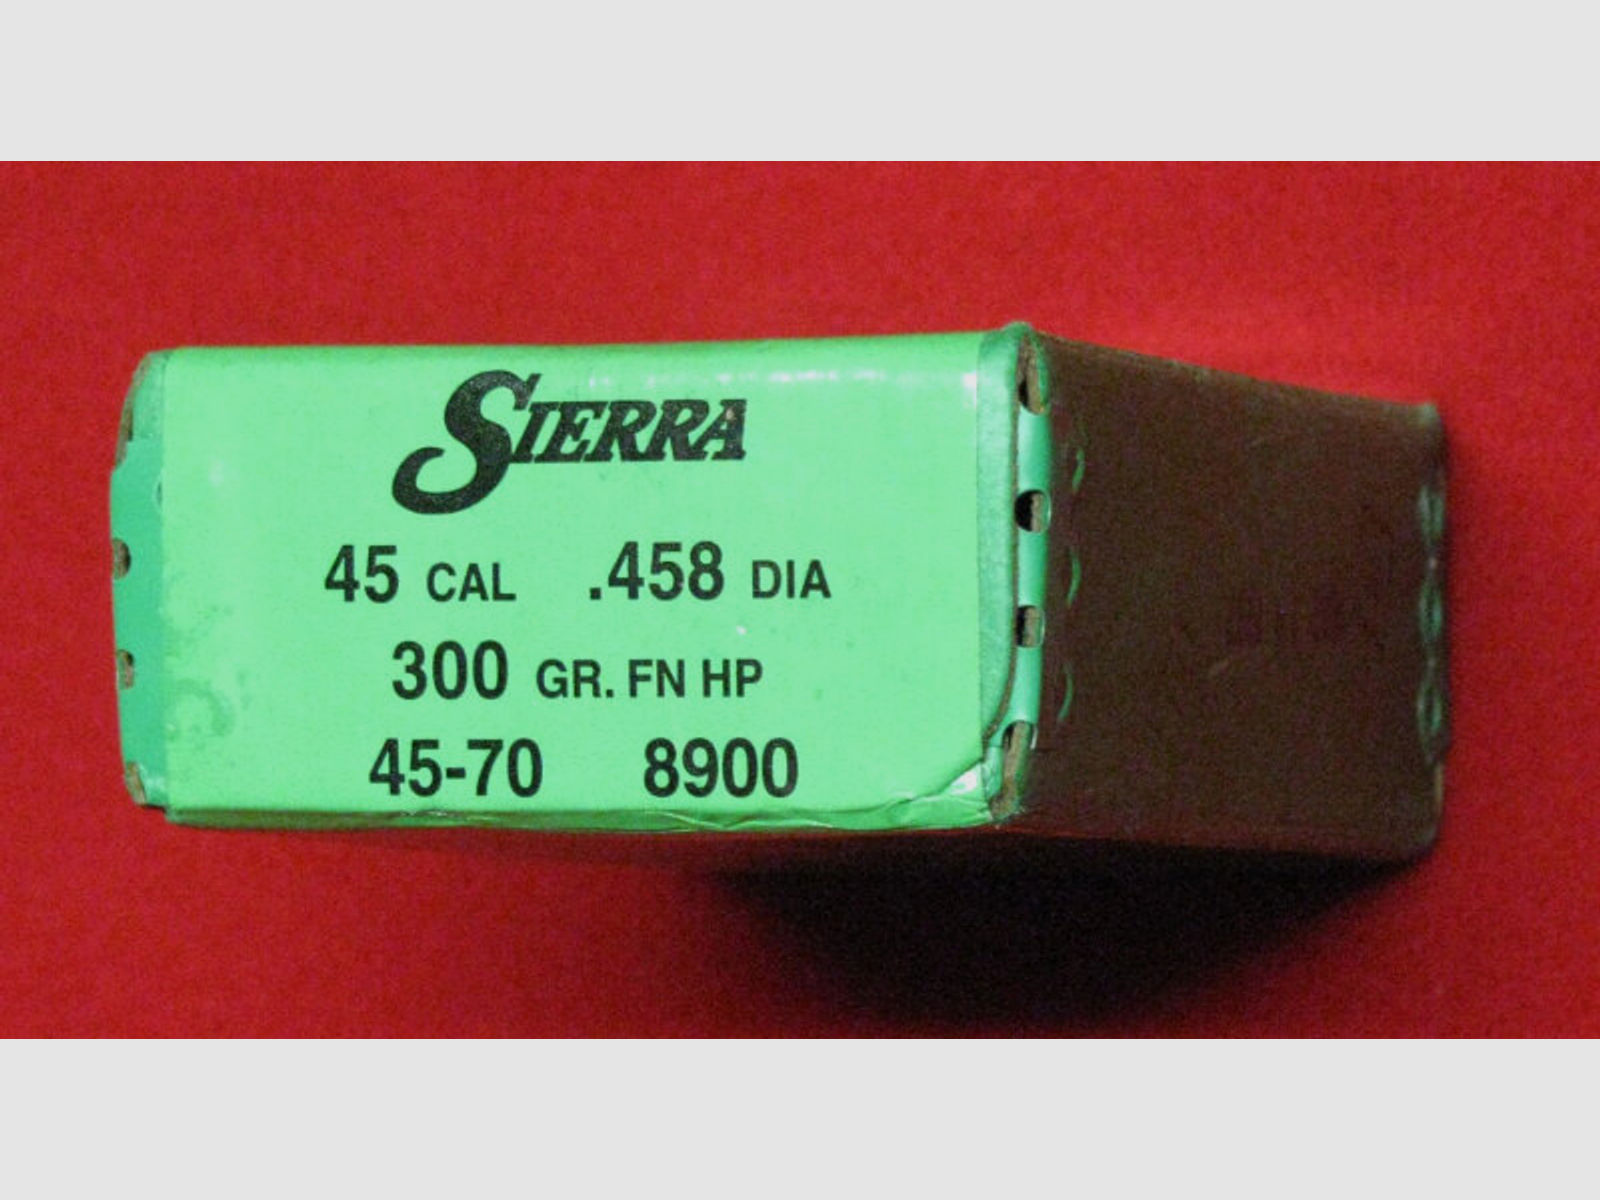 SIERRA, 50 Geschosse 45 CAL / 458 und 300 GR. FN HP original verpackt, Bitte ansehen